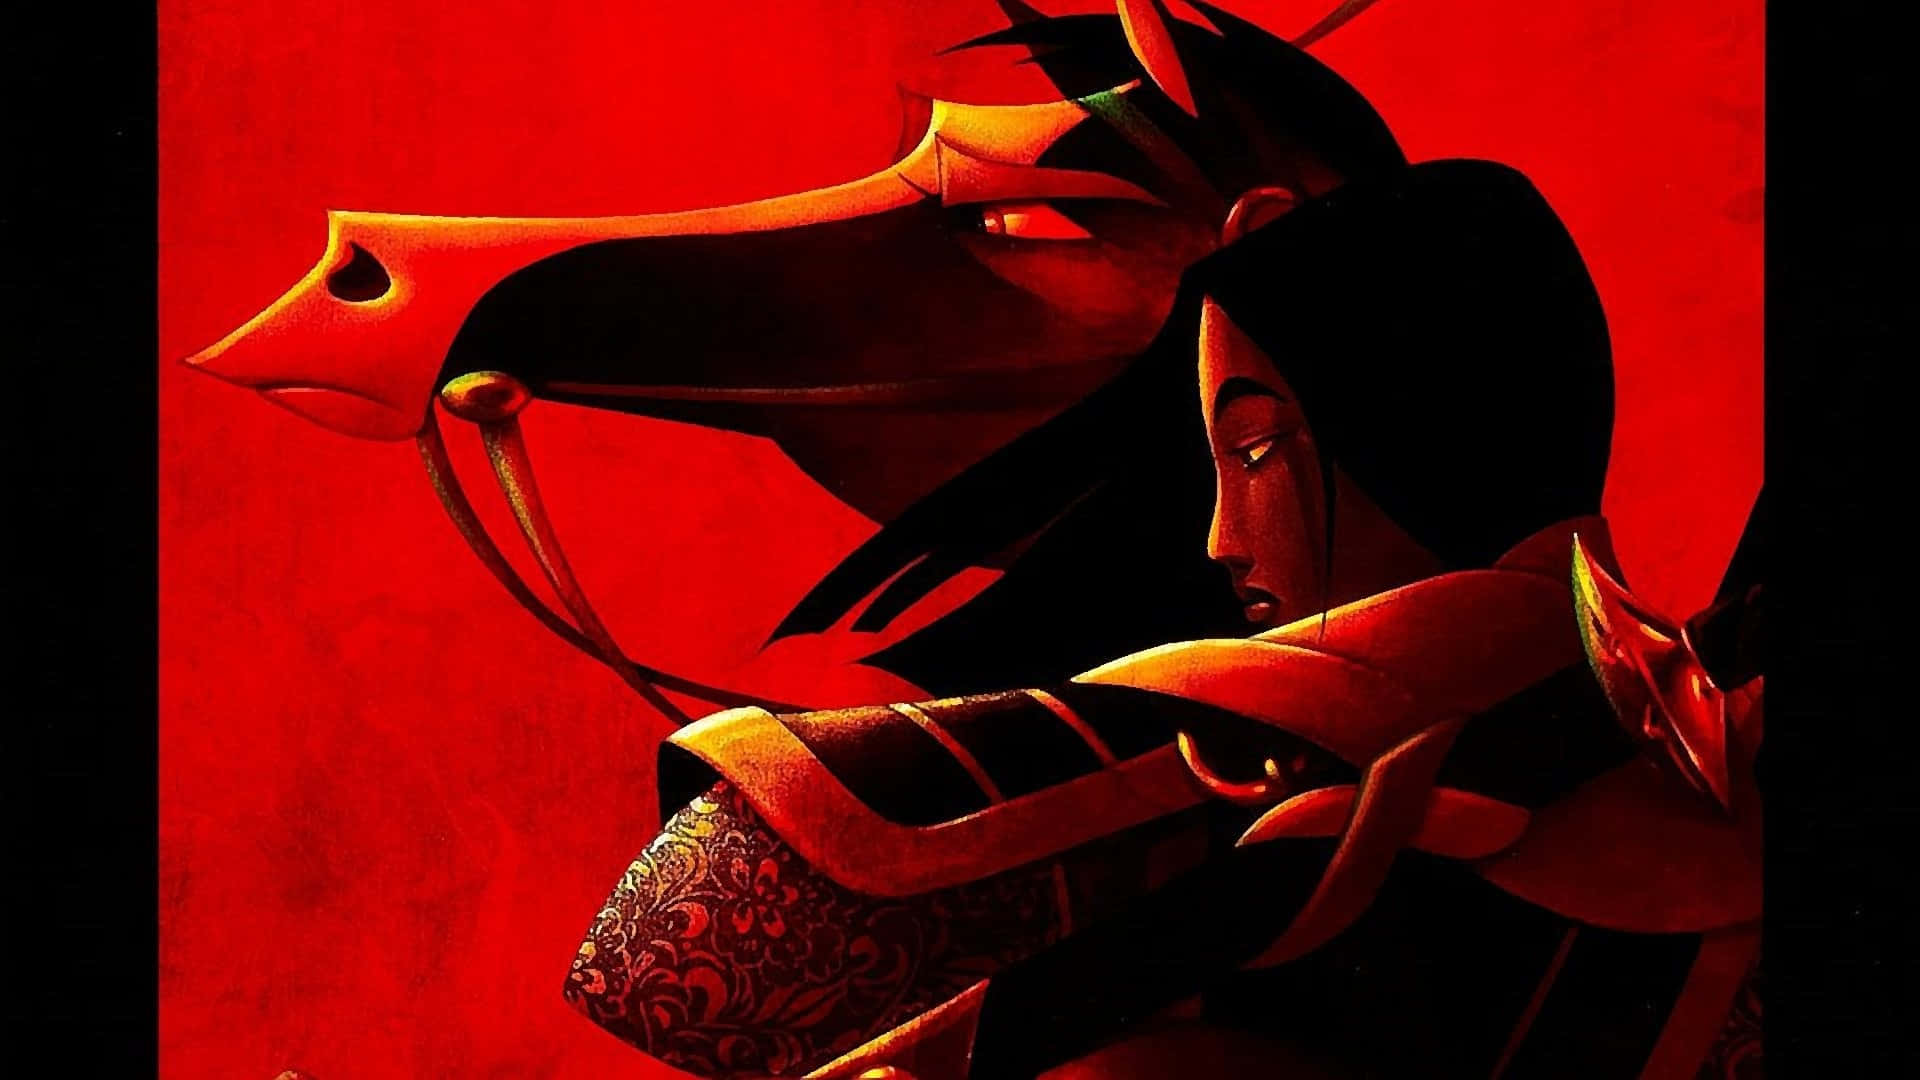 Legendariskahjältinnan Mulan Räddar Kina